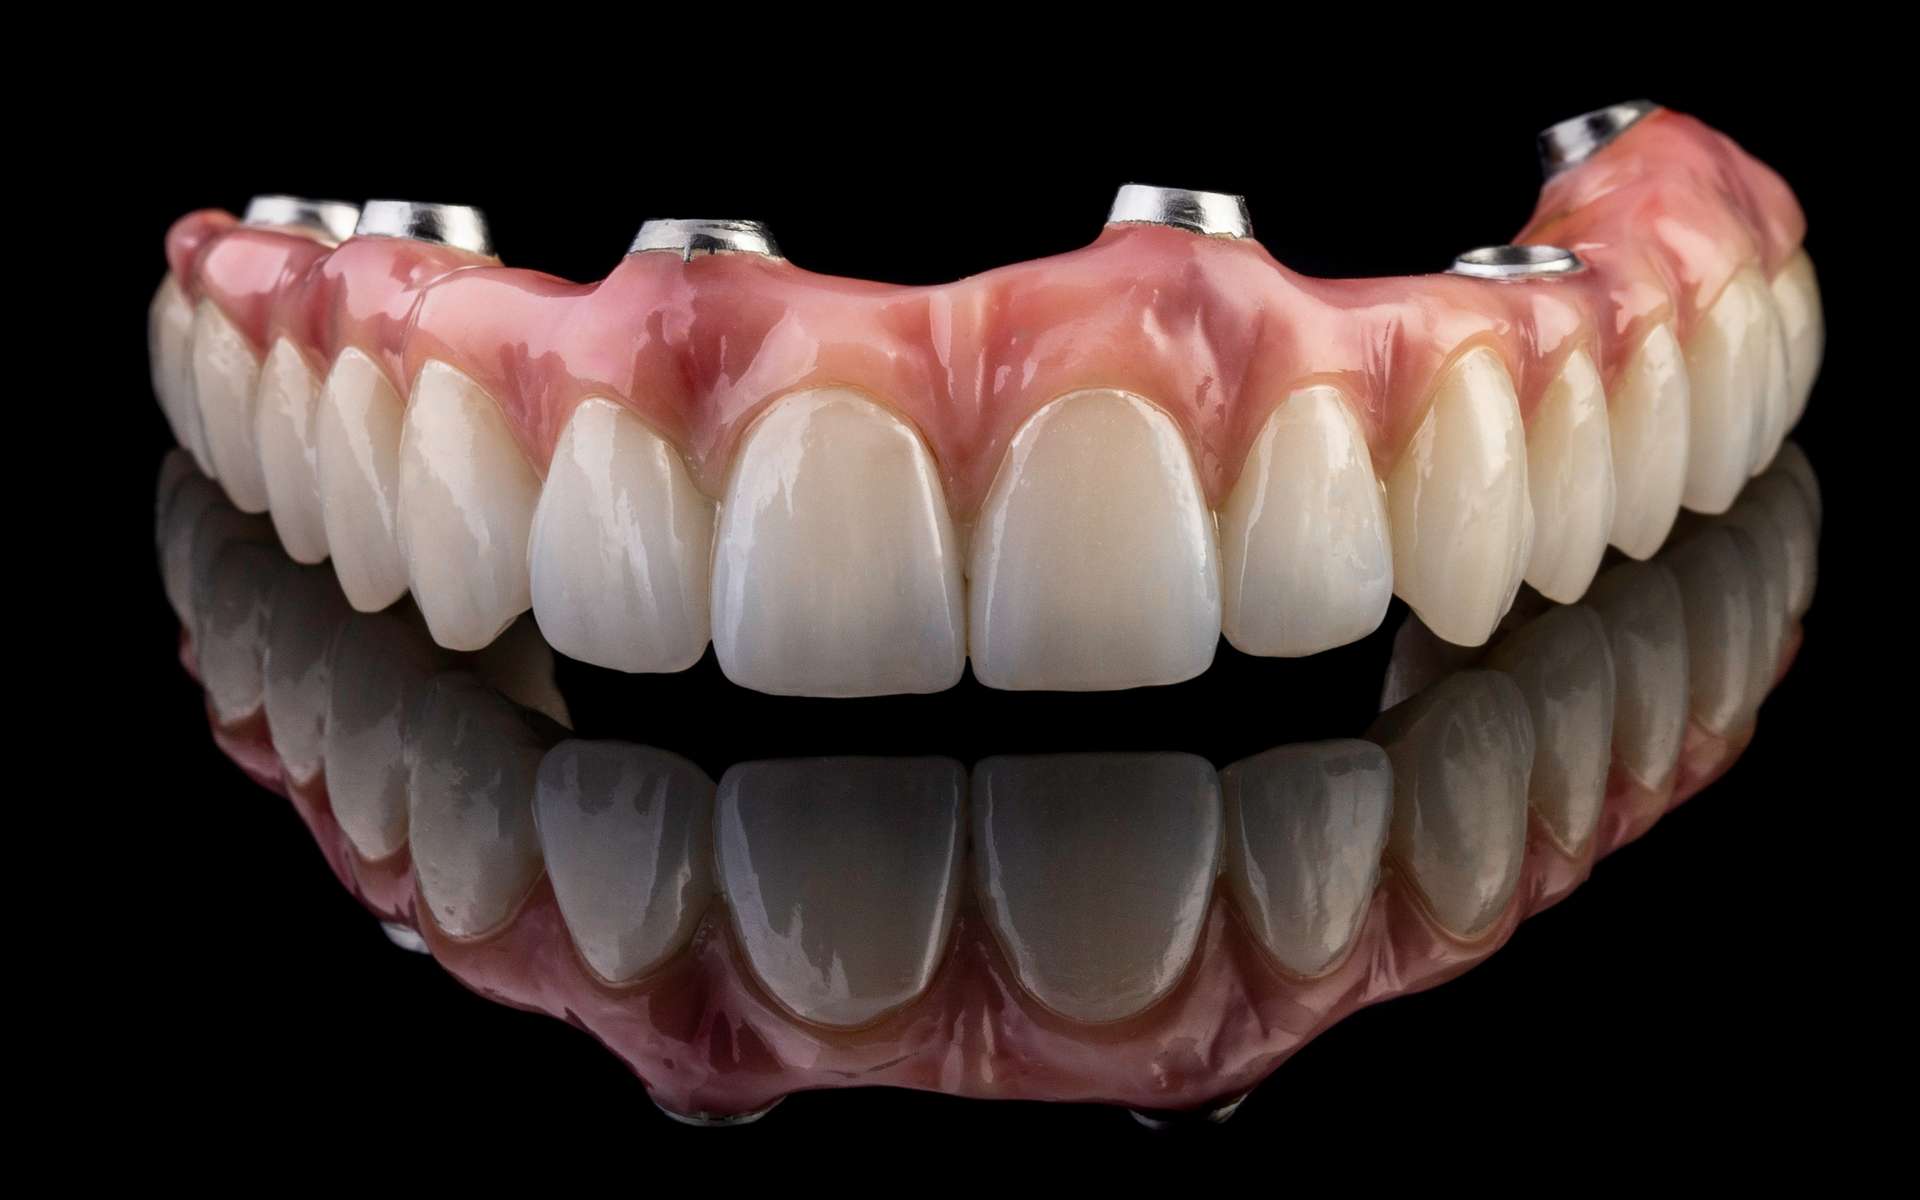 Le sourire d'or d'une aristocrate du XVIIe siècle permet de comprendre les soins dentaires à cette époque